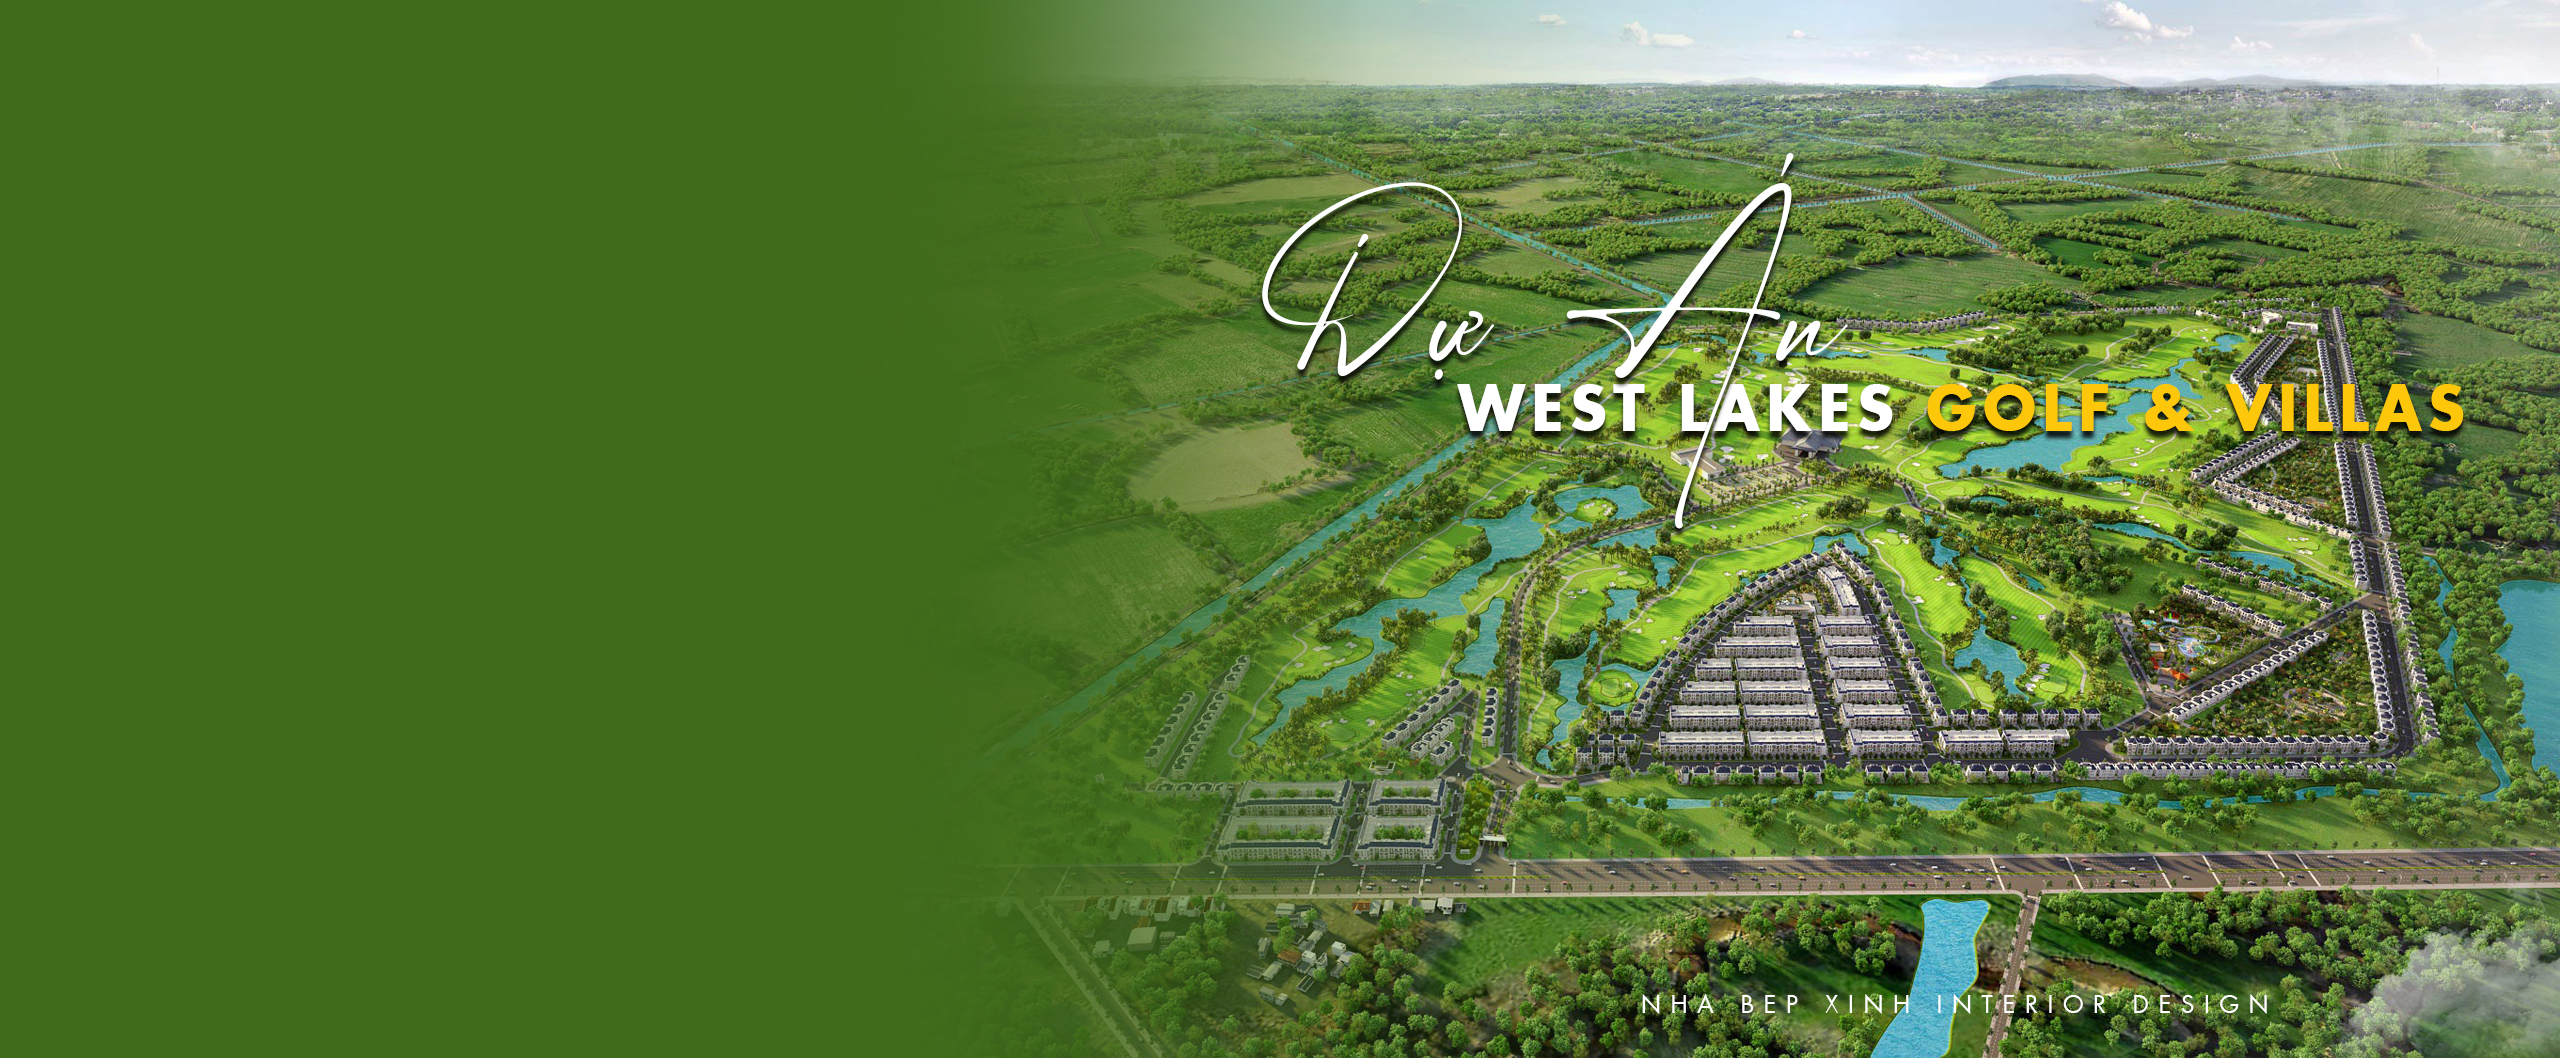 Du-An-West-Lakes-Golf-&-Villas-Long-An